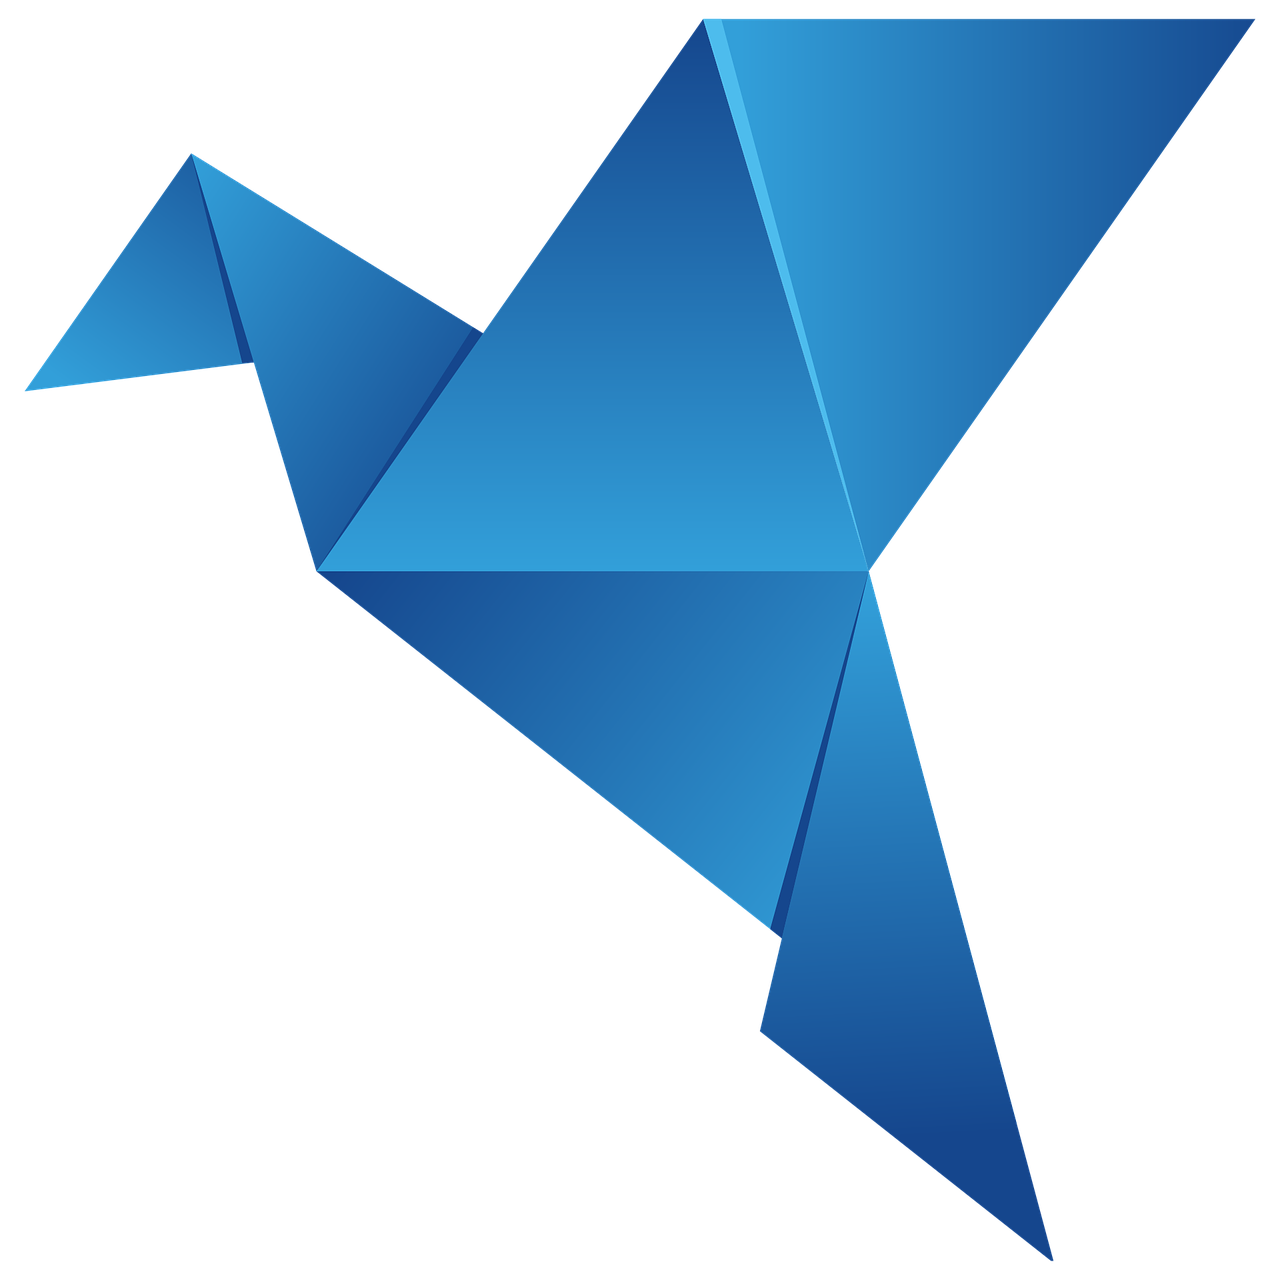 A blue origami paper crane